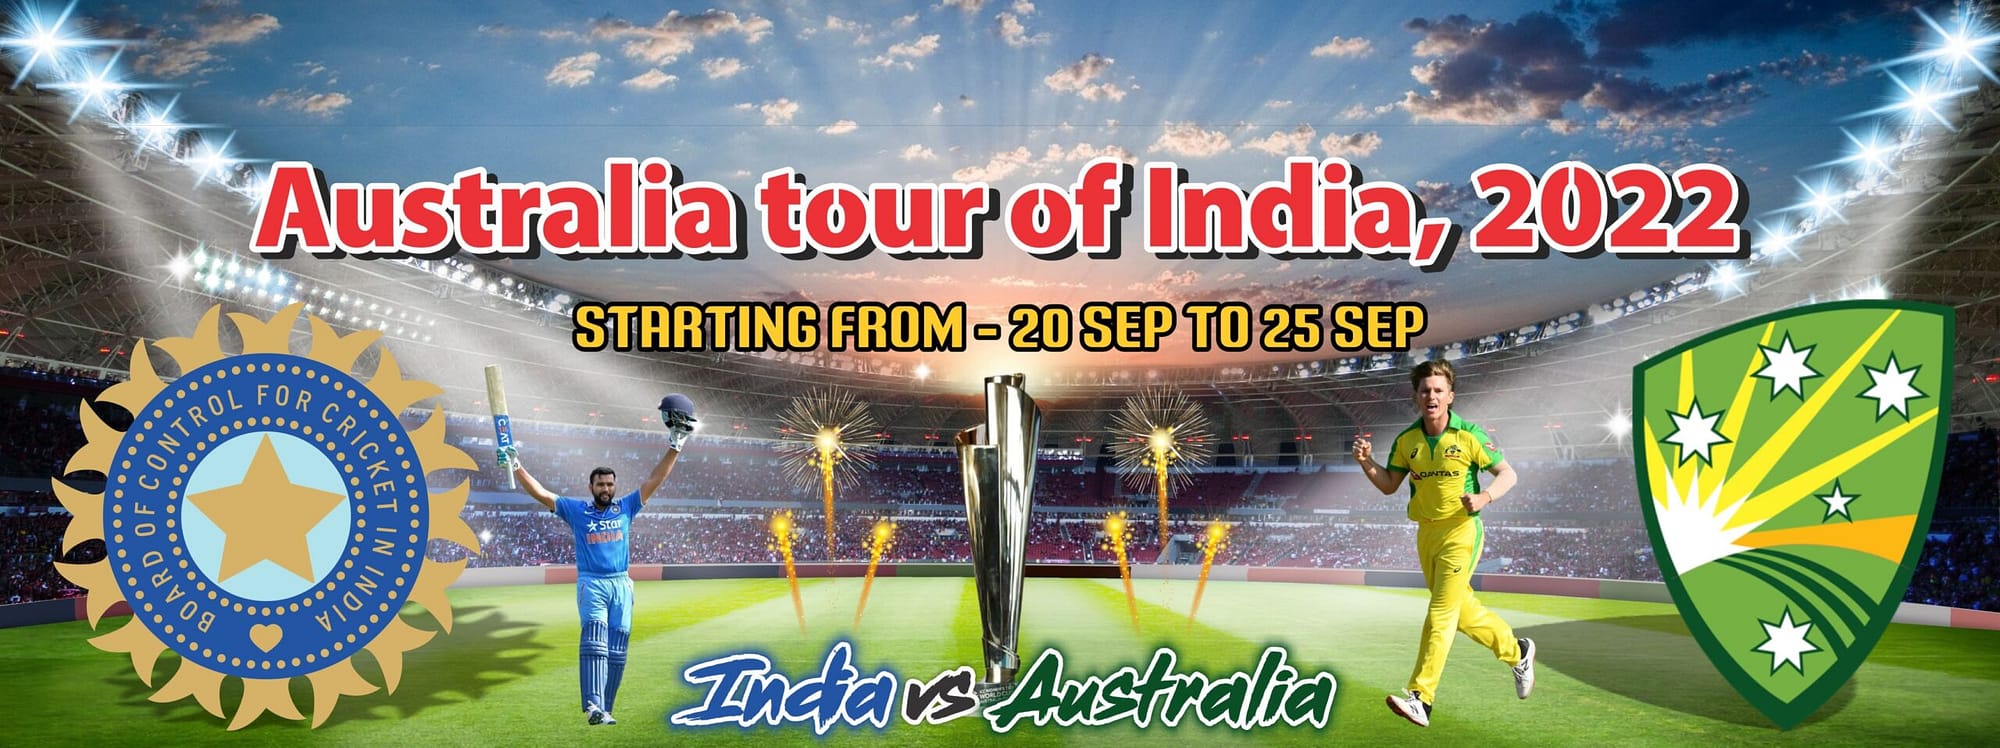 Australia tour of India, 2022